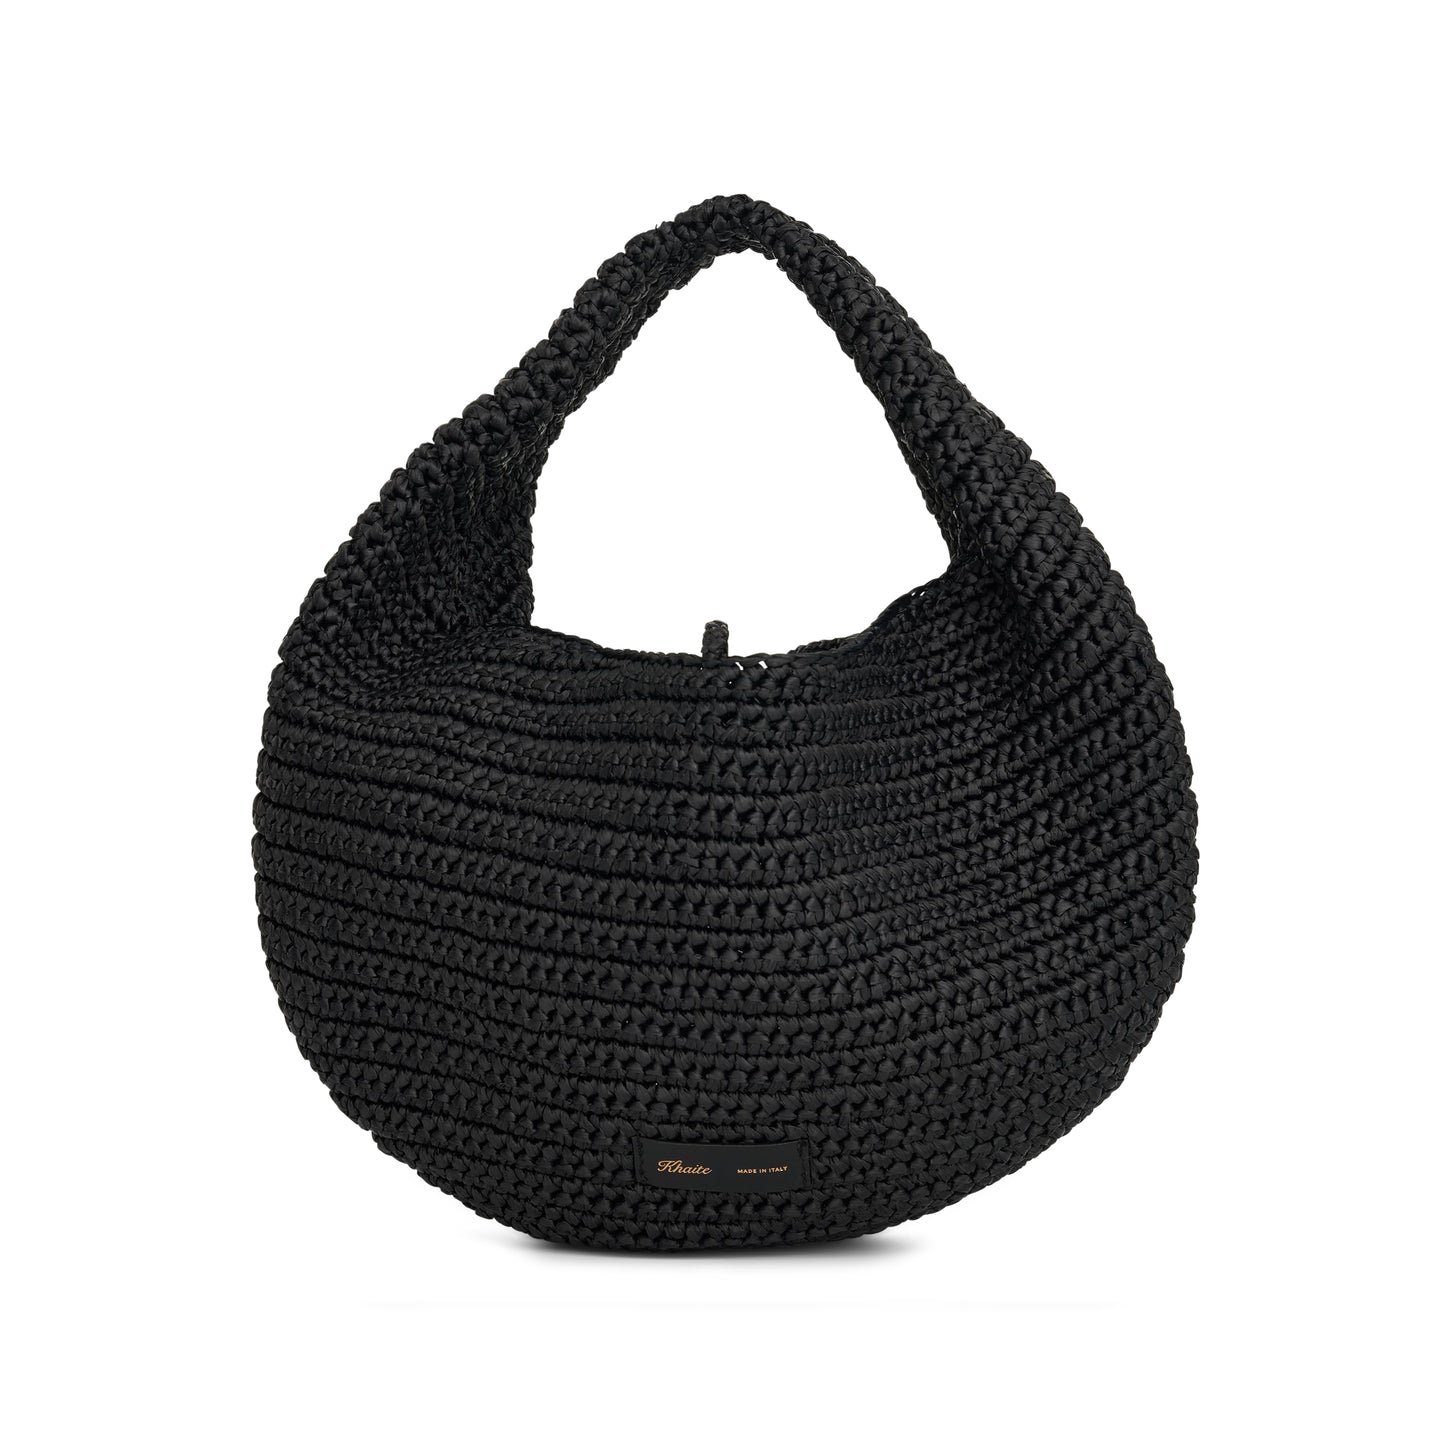 Olivia Hobo Medium Bag in Black